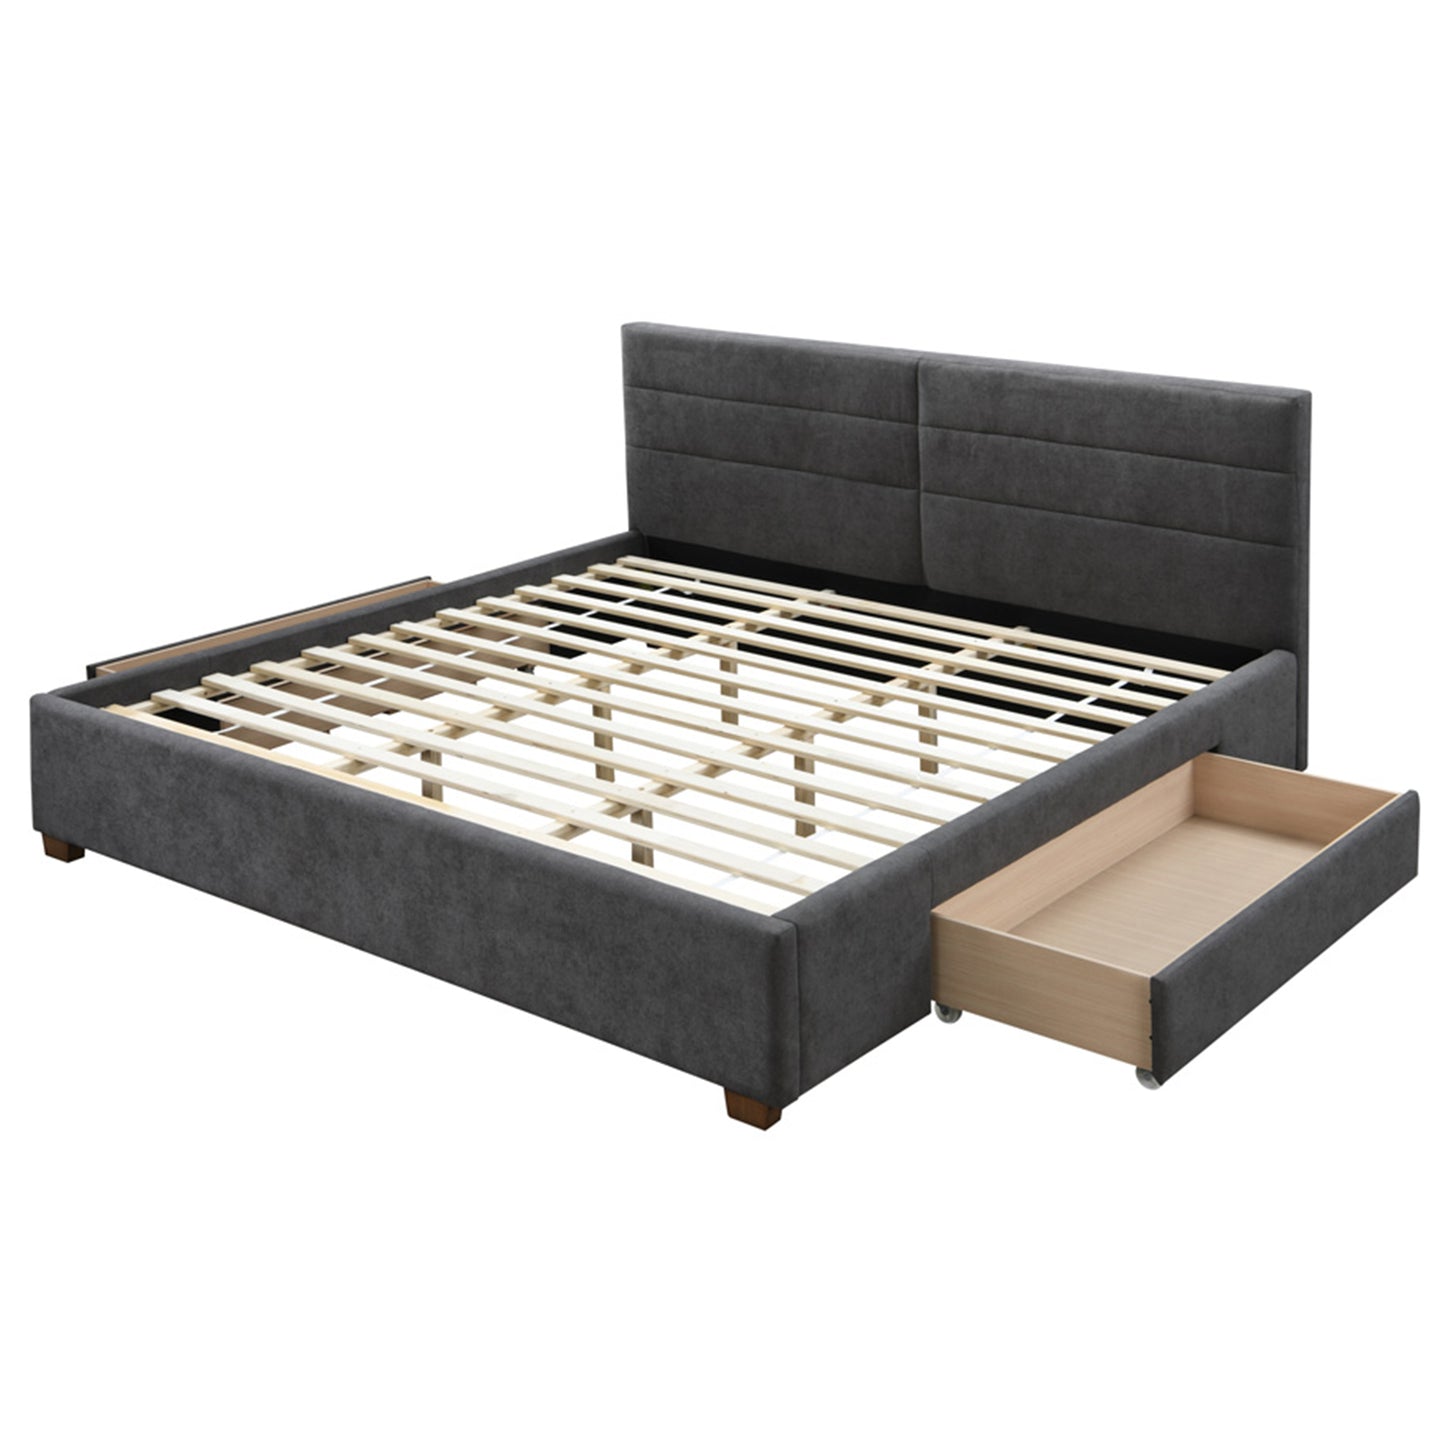 Emilio Platform Bed w/Drawer